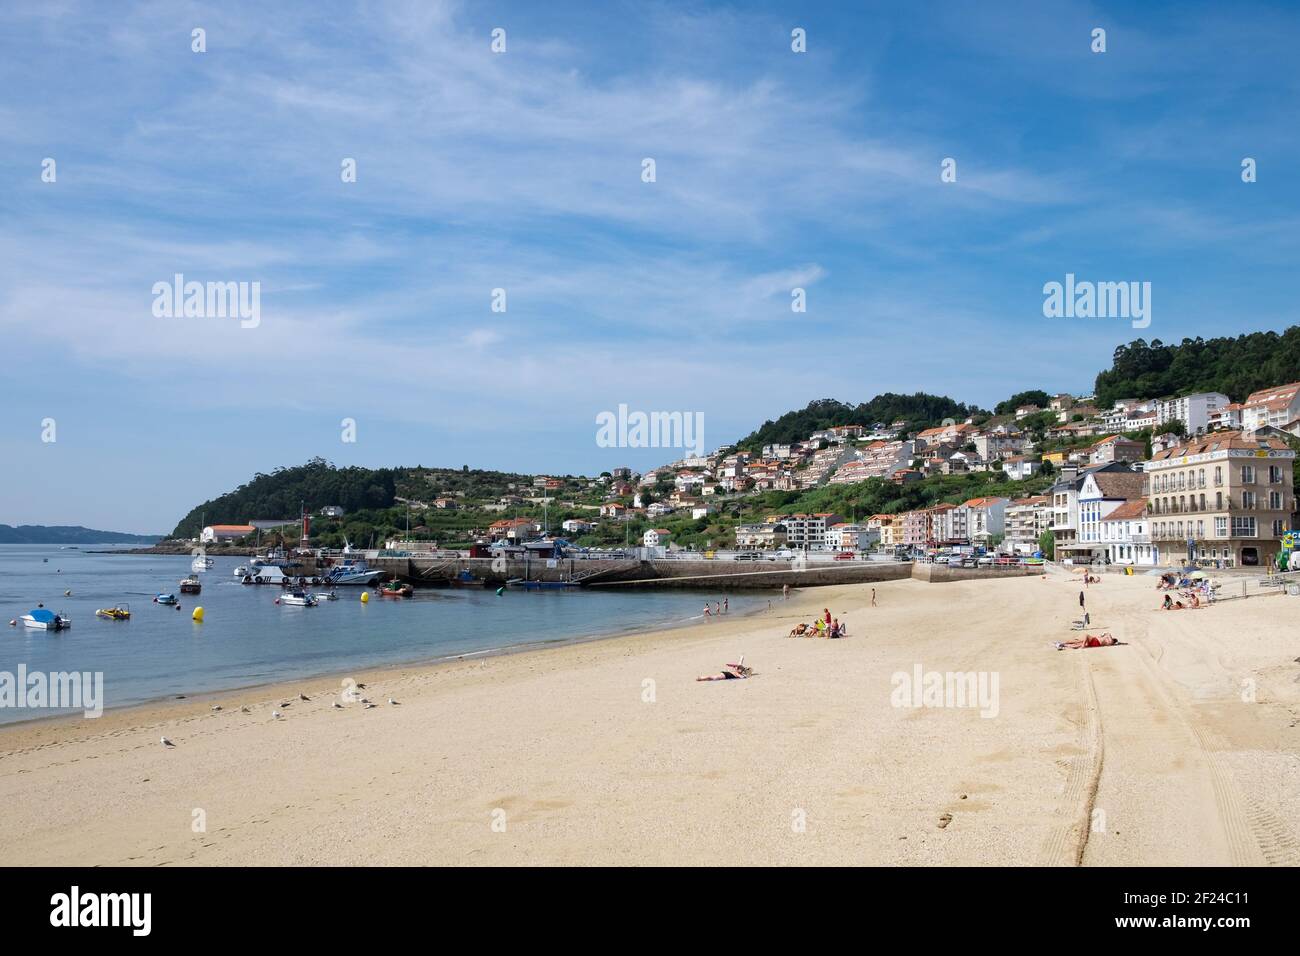 La spiaggia e villaggio turistico di Praia de Raxo nella provincia di Pontevedra, Galizia, Spagna settentrionale Foto Stock